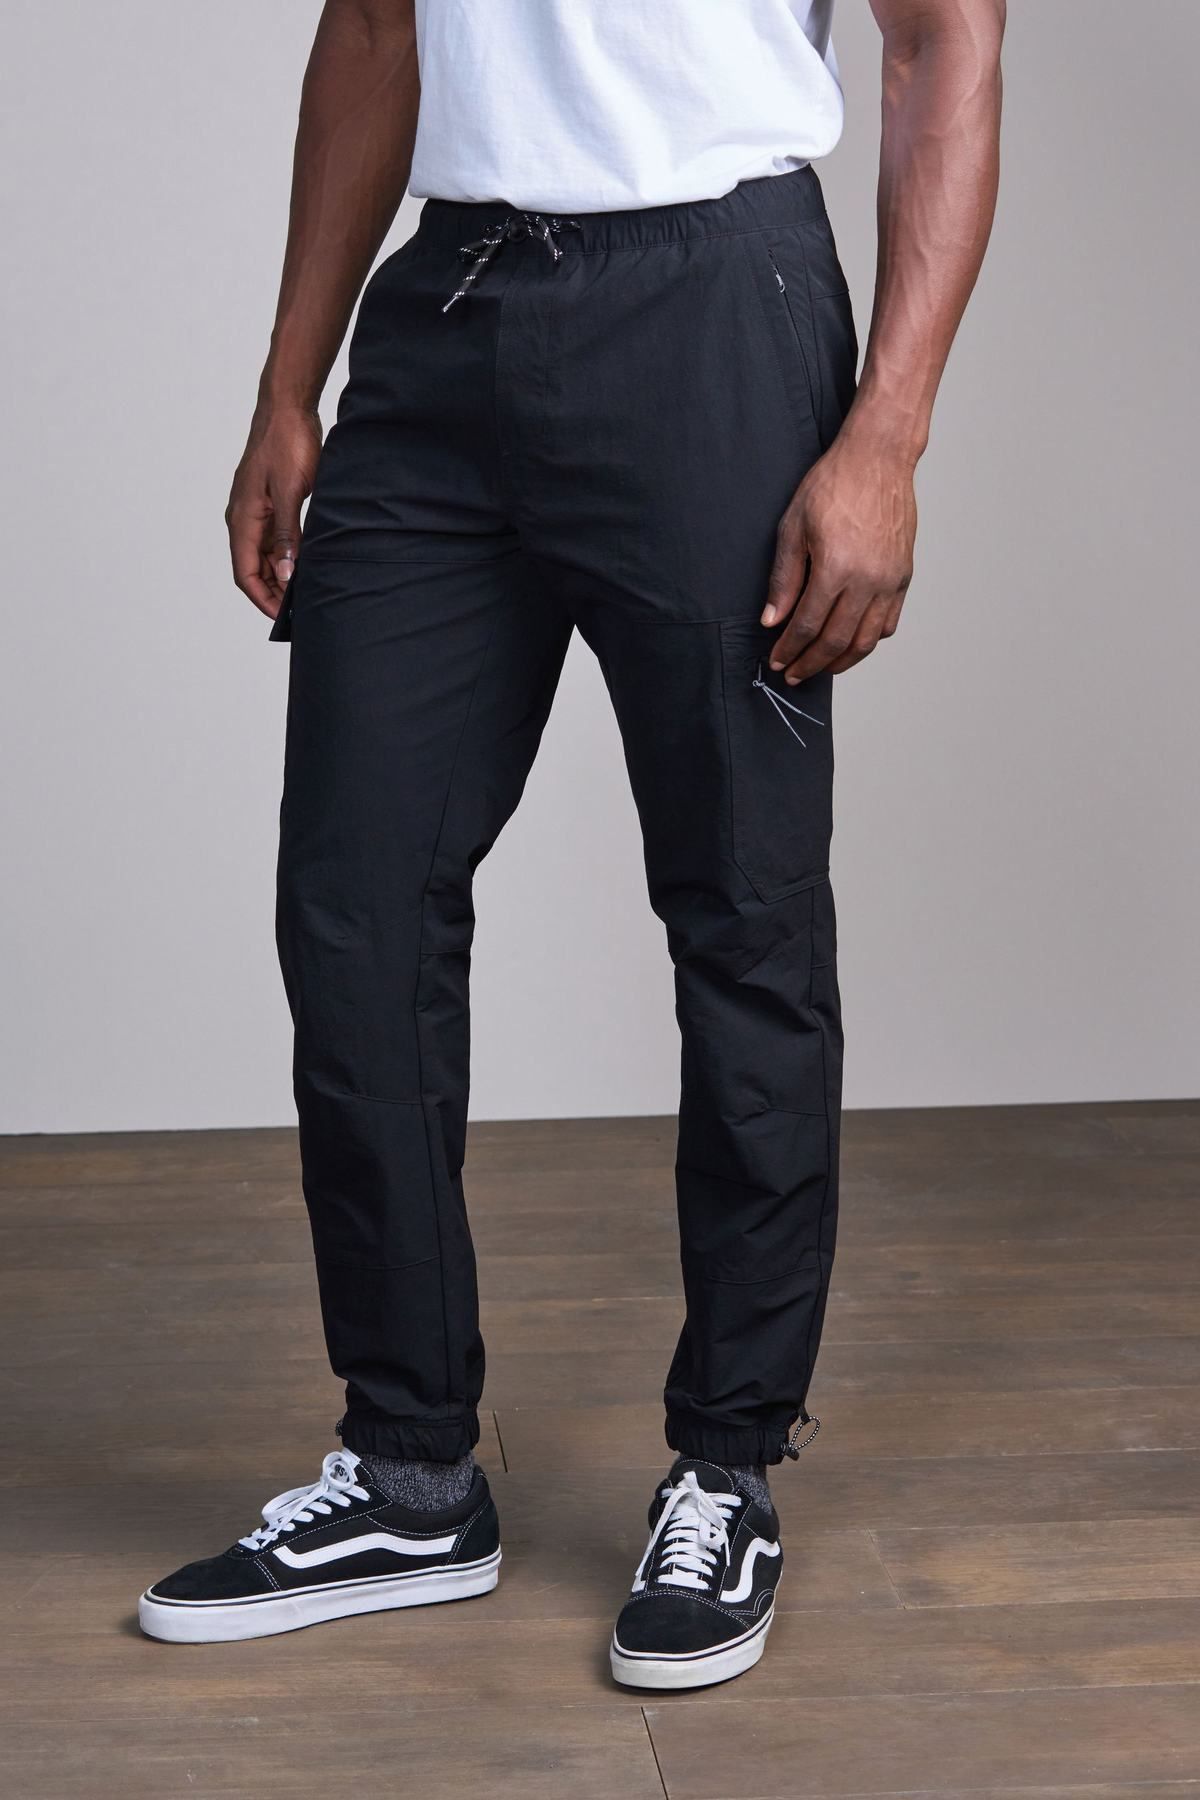 Buy Mens Black Slim Fit Cargo Trousers for Men Blue Online at Bewakoof